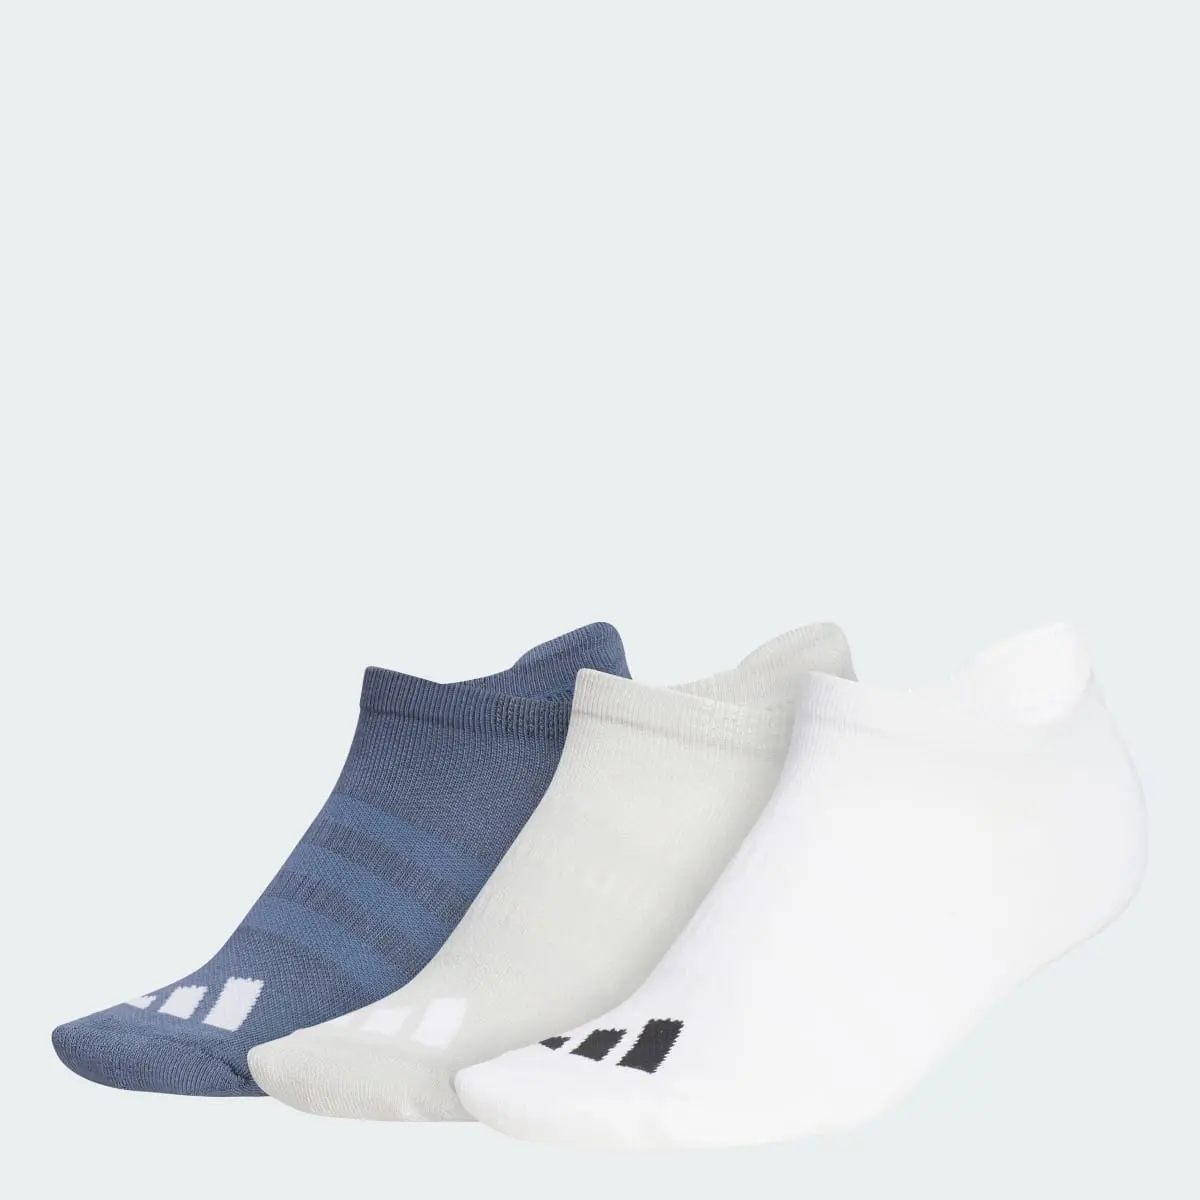 Adidas Calcetines tobilleros Women's Comfort. 1